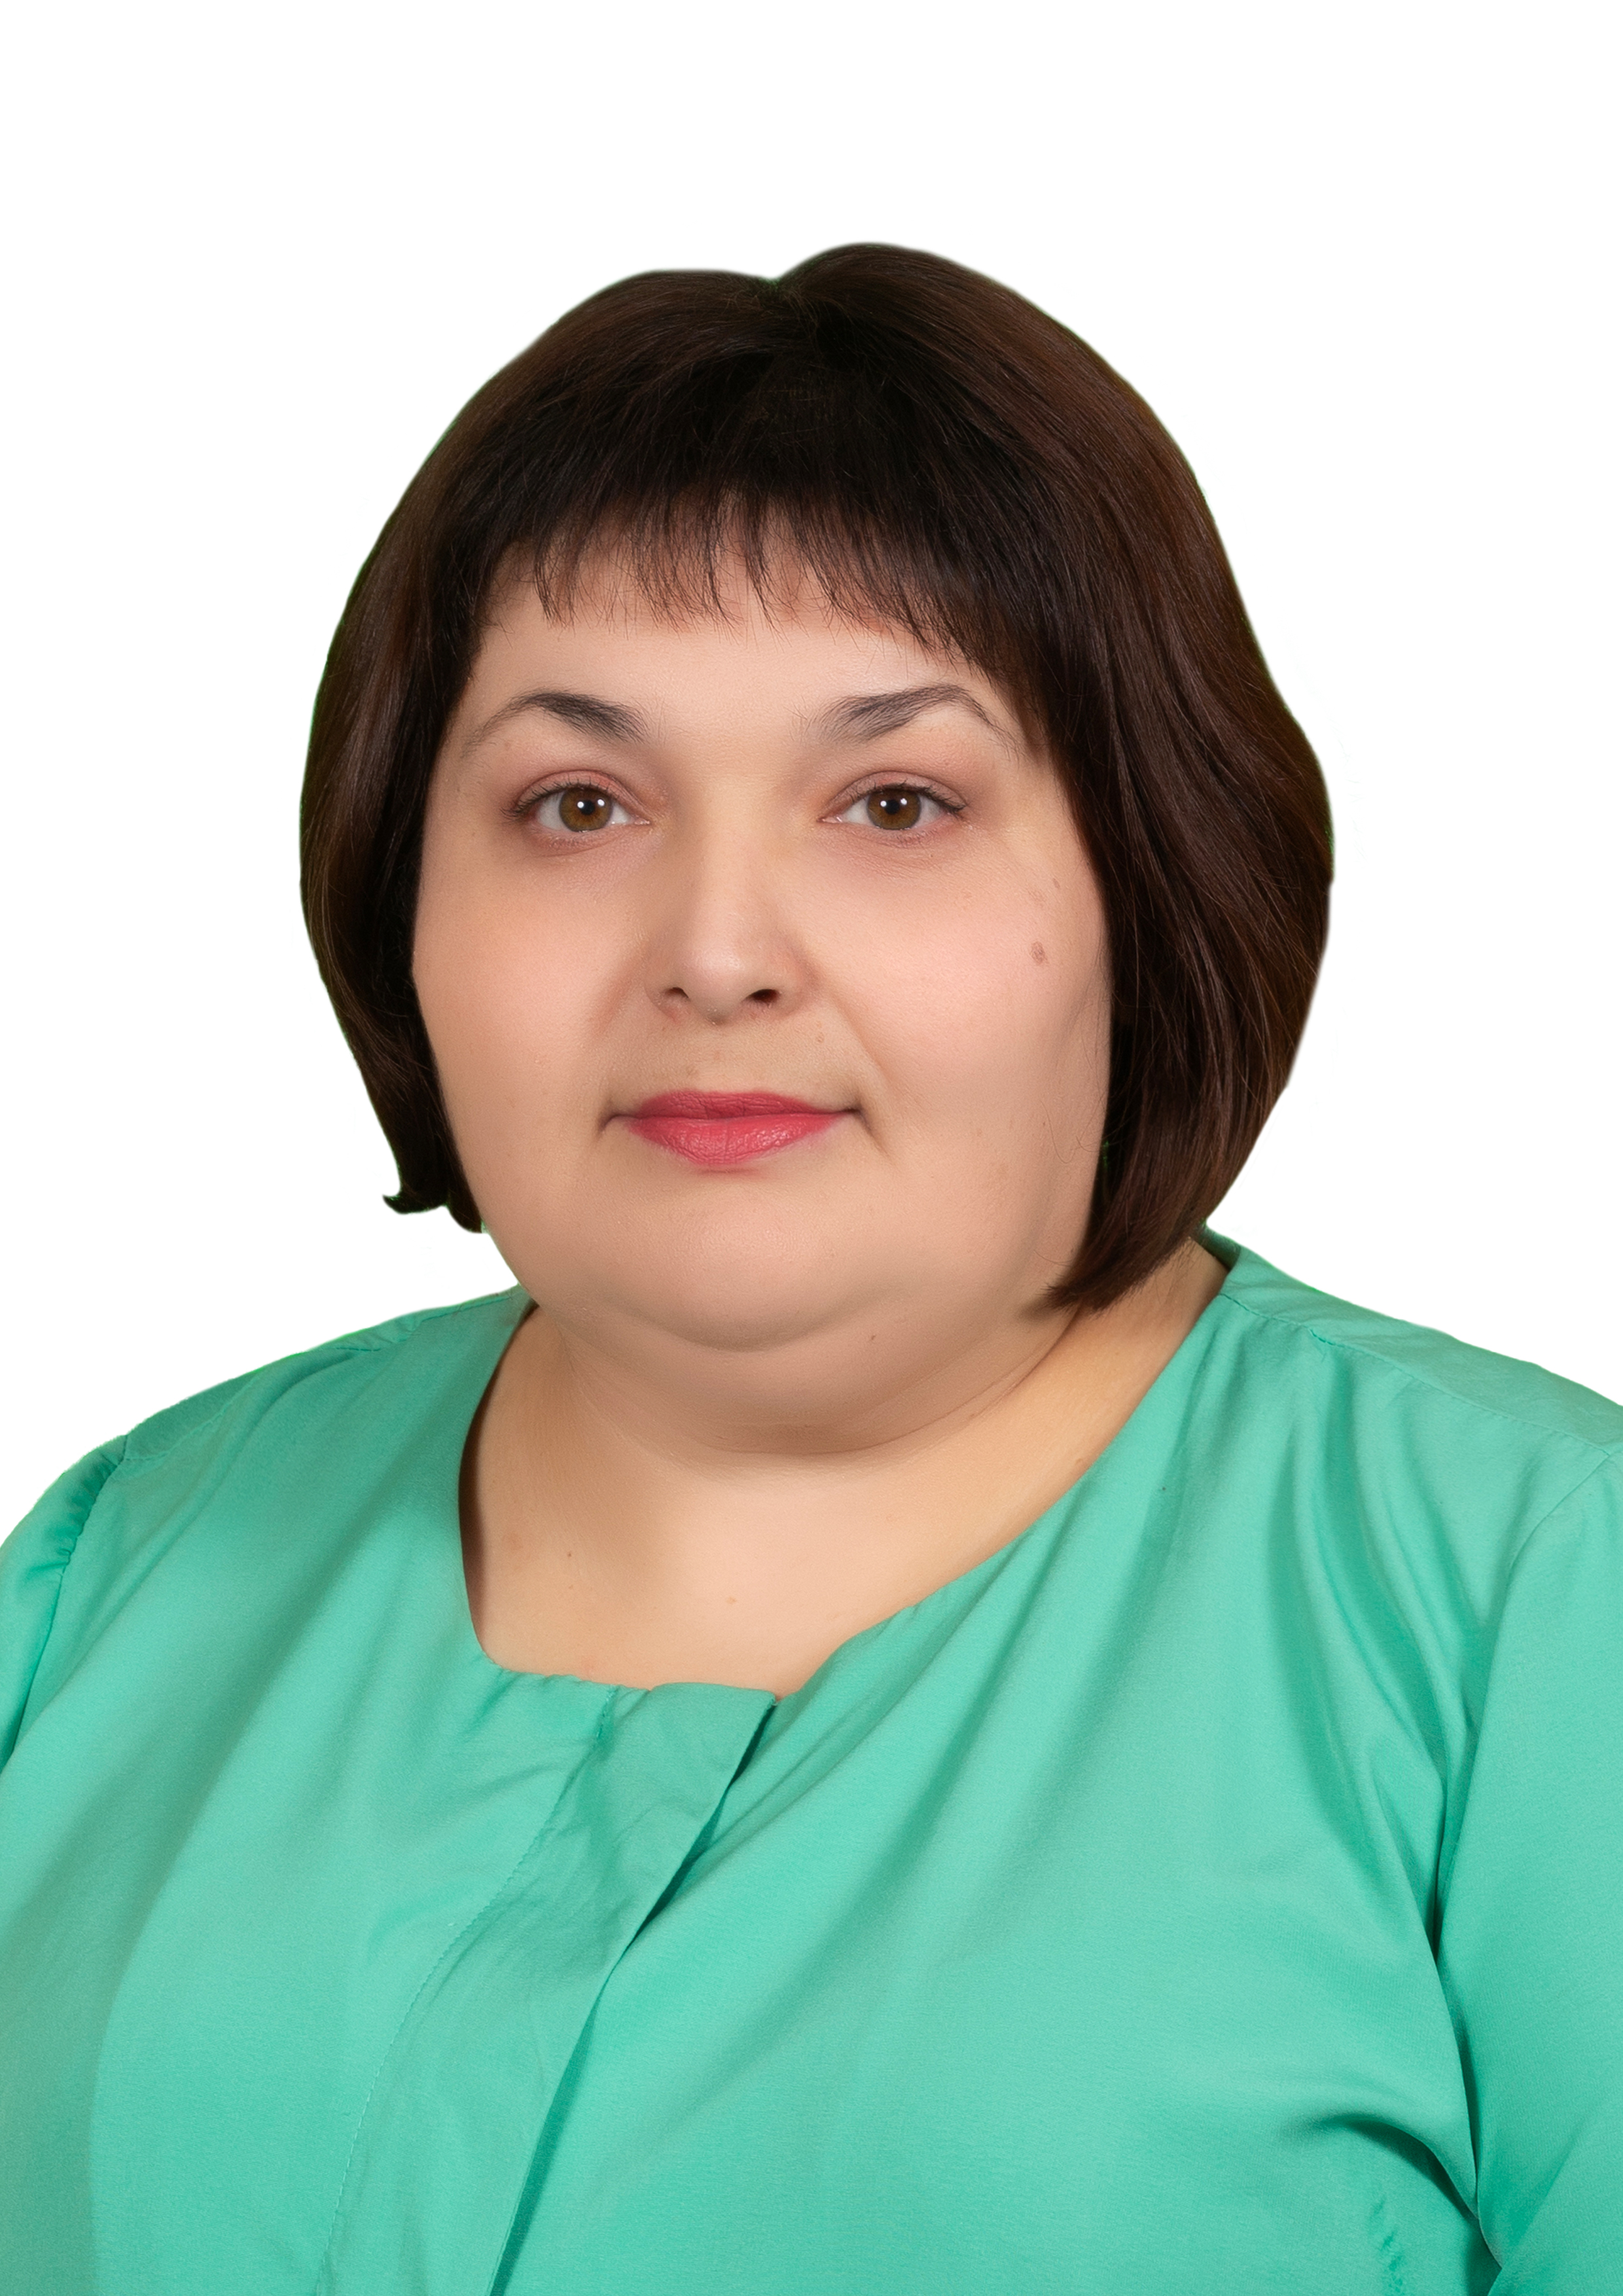 Воспитатель высшей категории Оксана Владимировна Данилова.